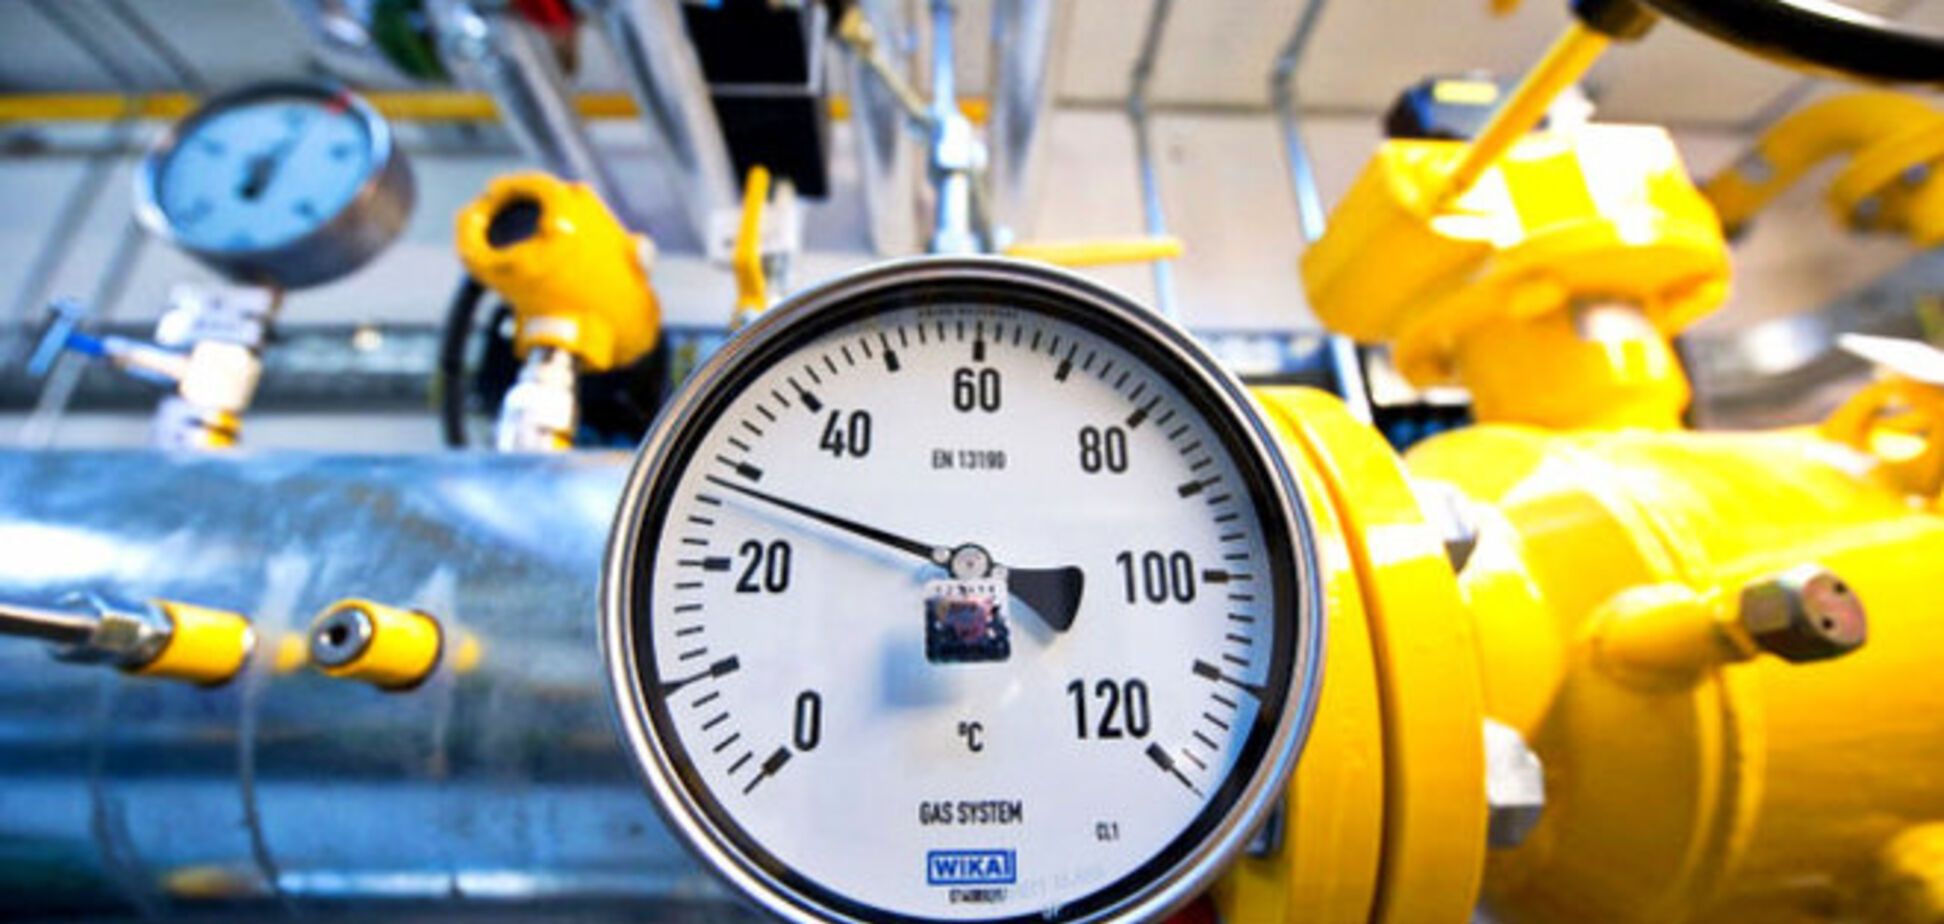 Кипр поможет Европе избавиться от российской газовой зависимости